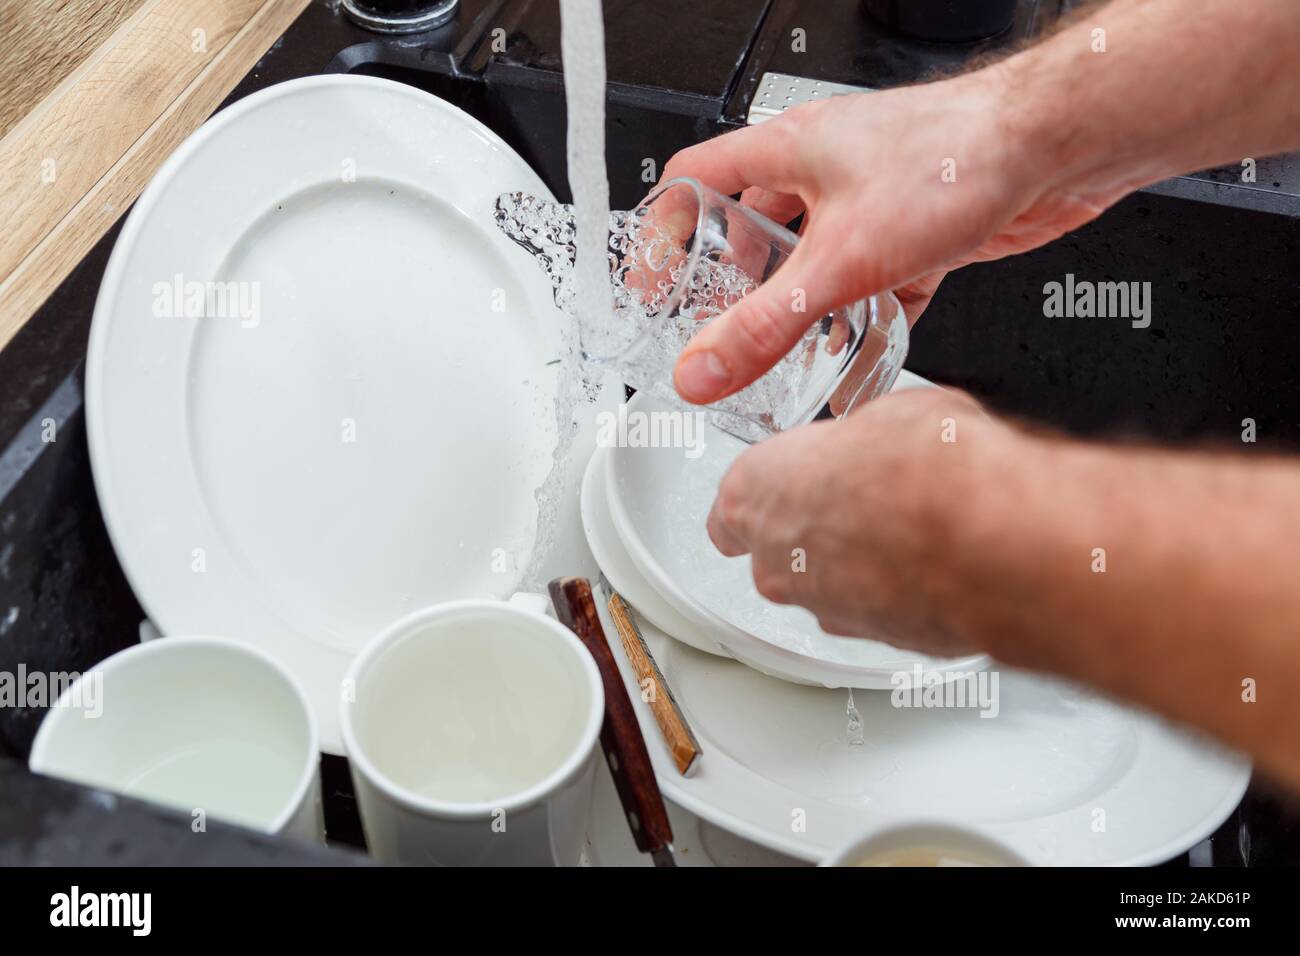 Lavar los platos - el hombre de manos en guantes de vidrio lavado bajo el grifo de agua en el fregadero. Foto de stock